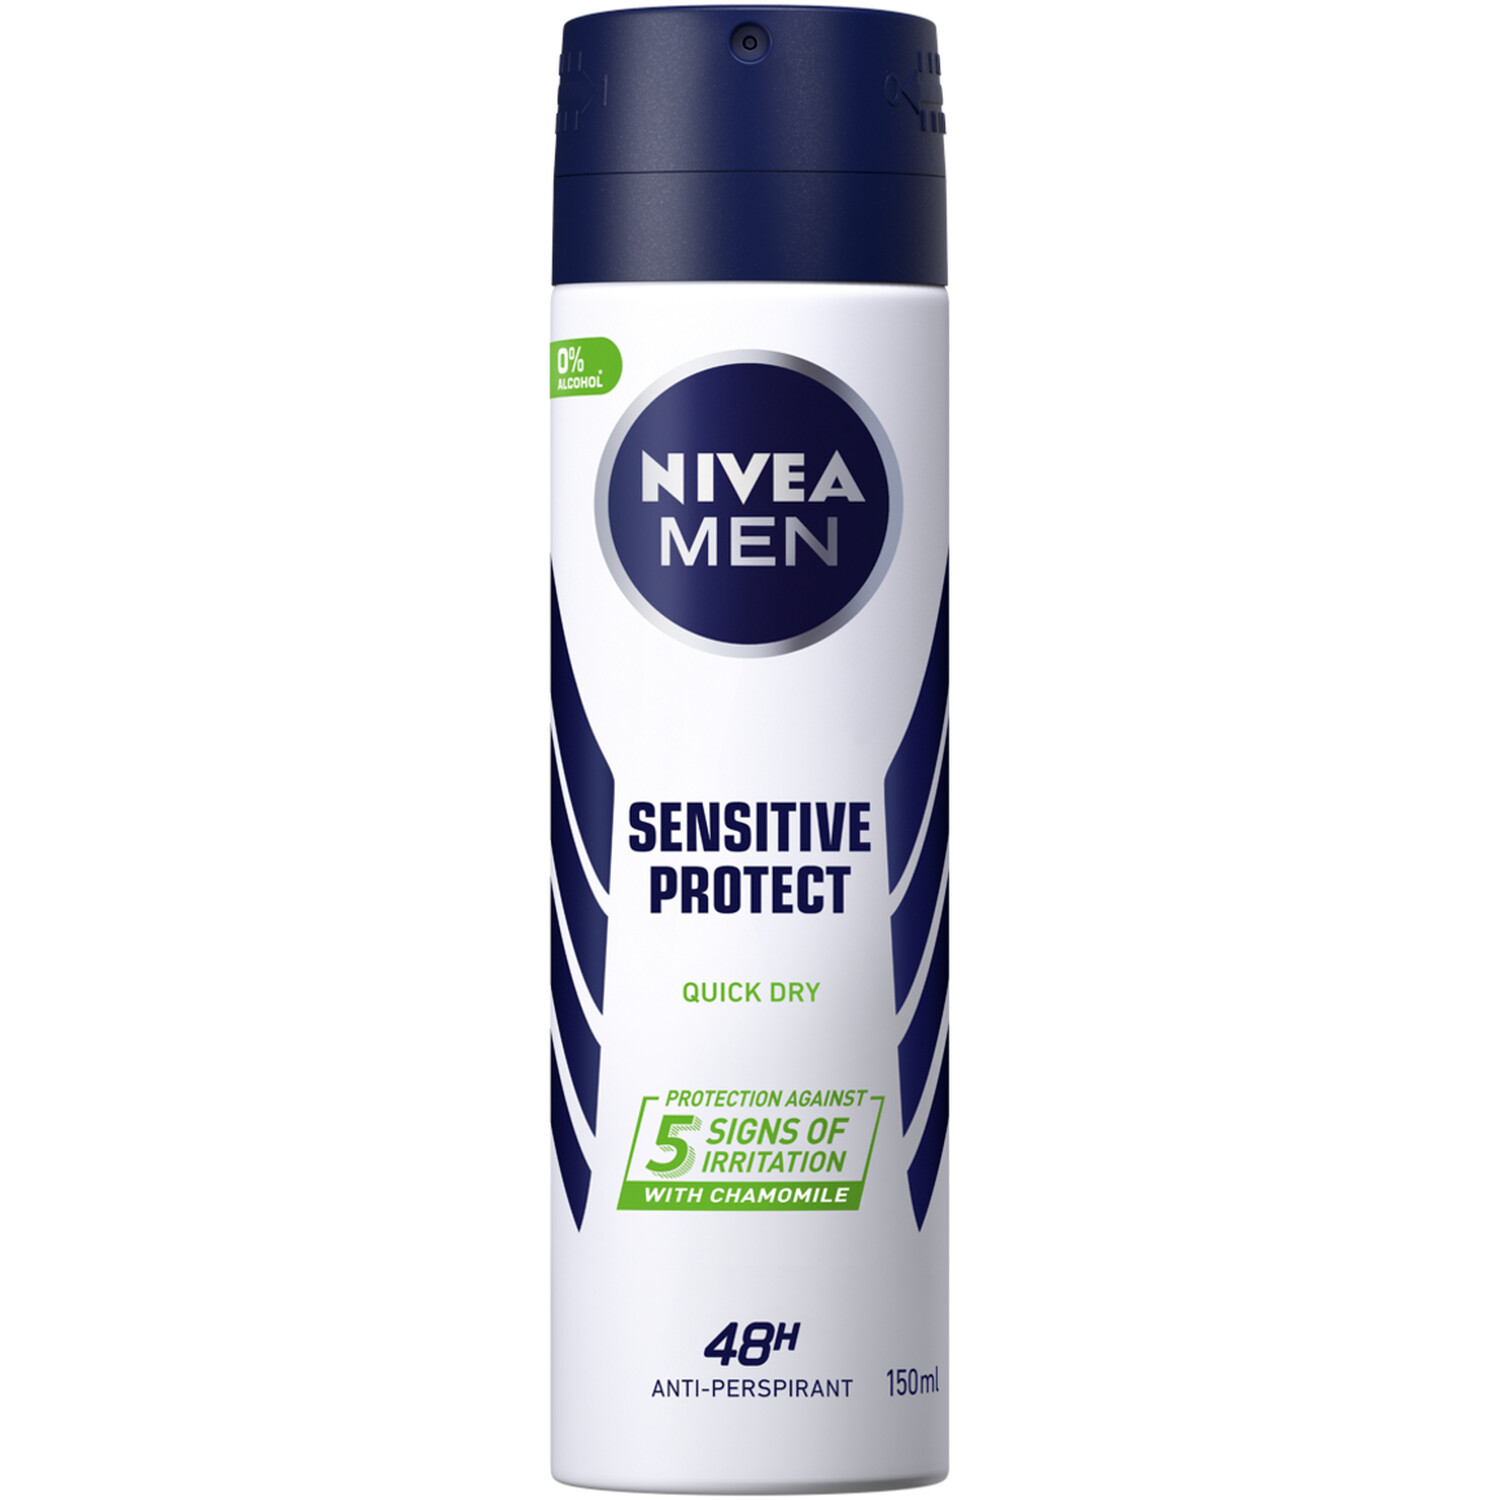 Nivea Men Sensitive Protect Anti-Perspirant 150ml - White Image